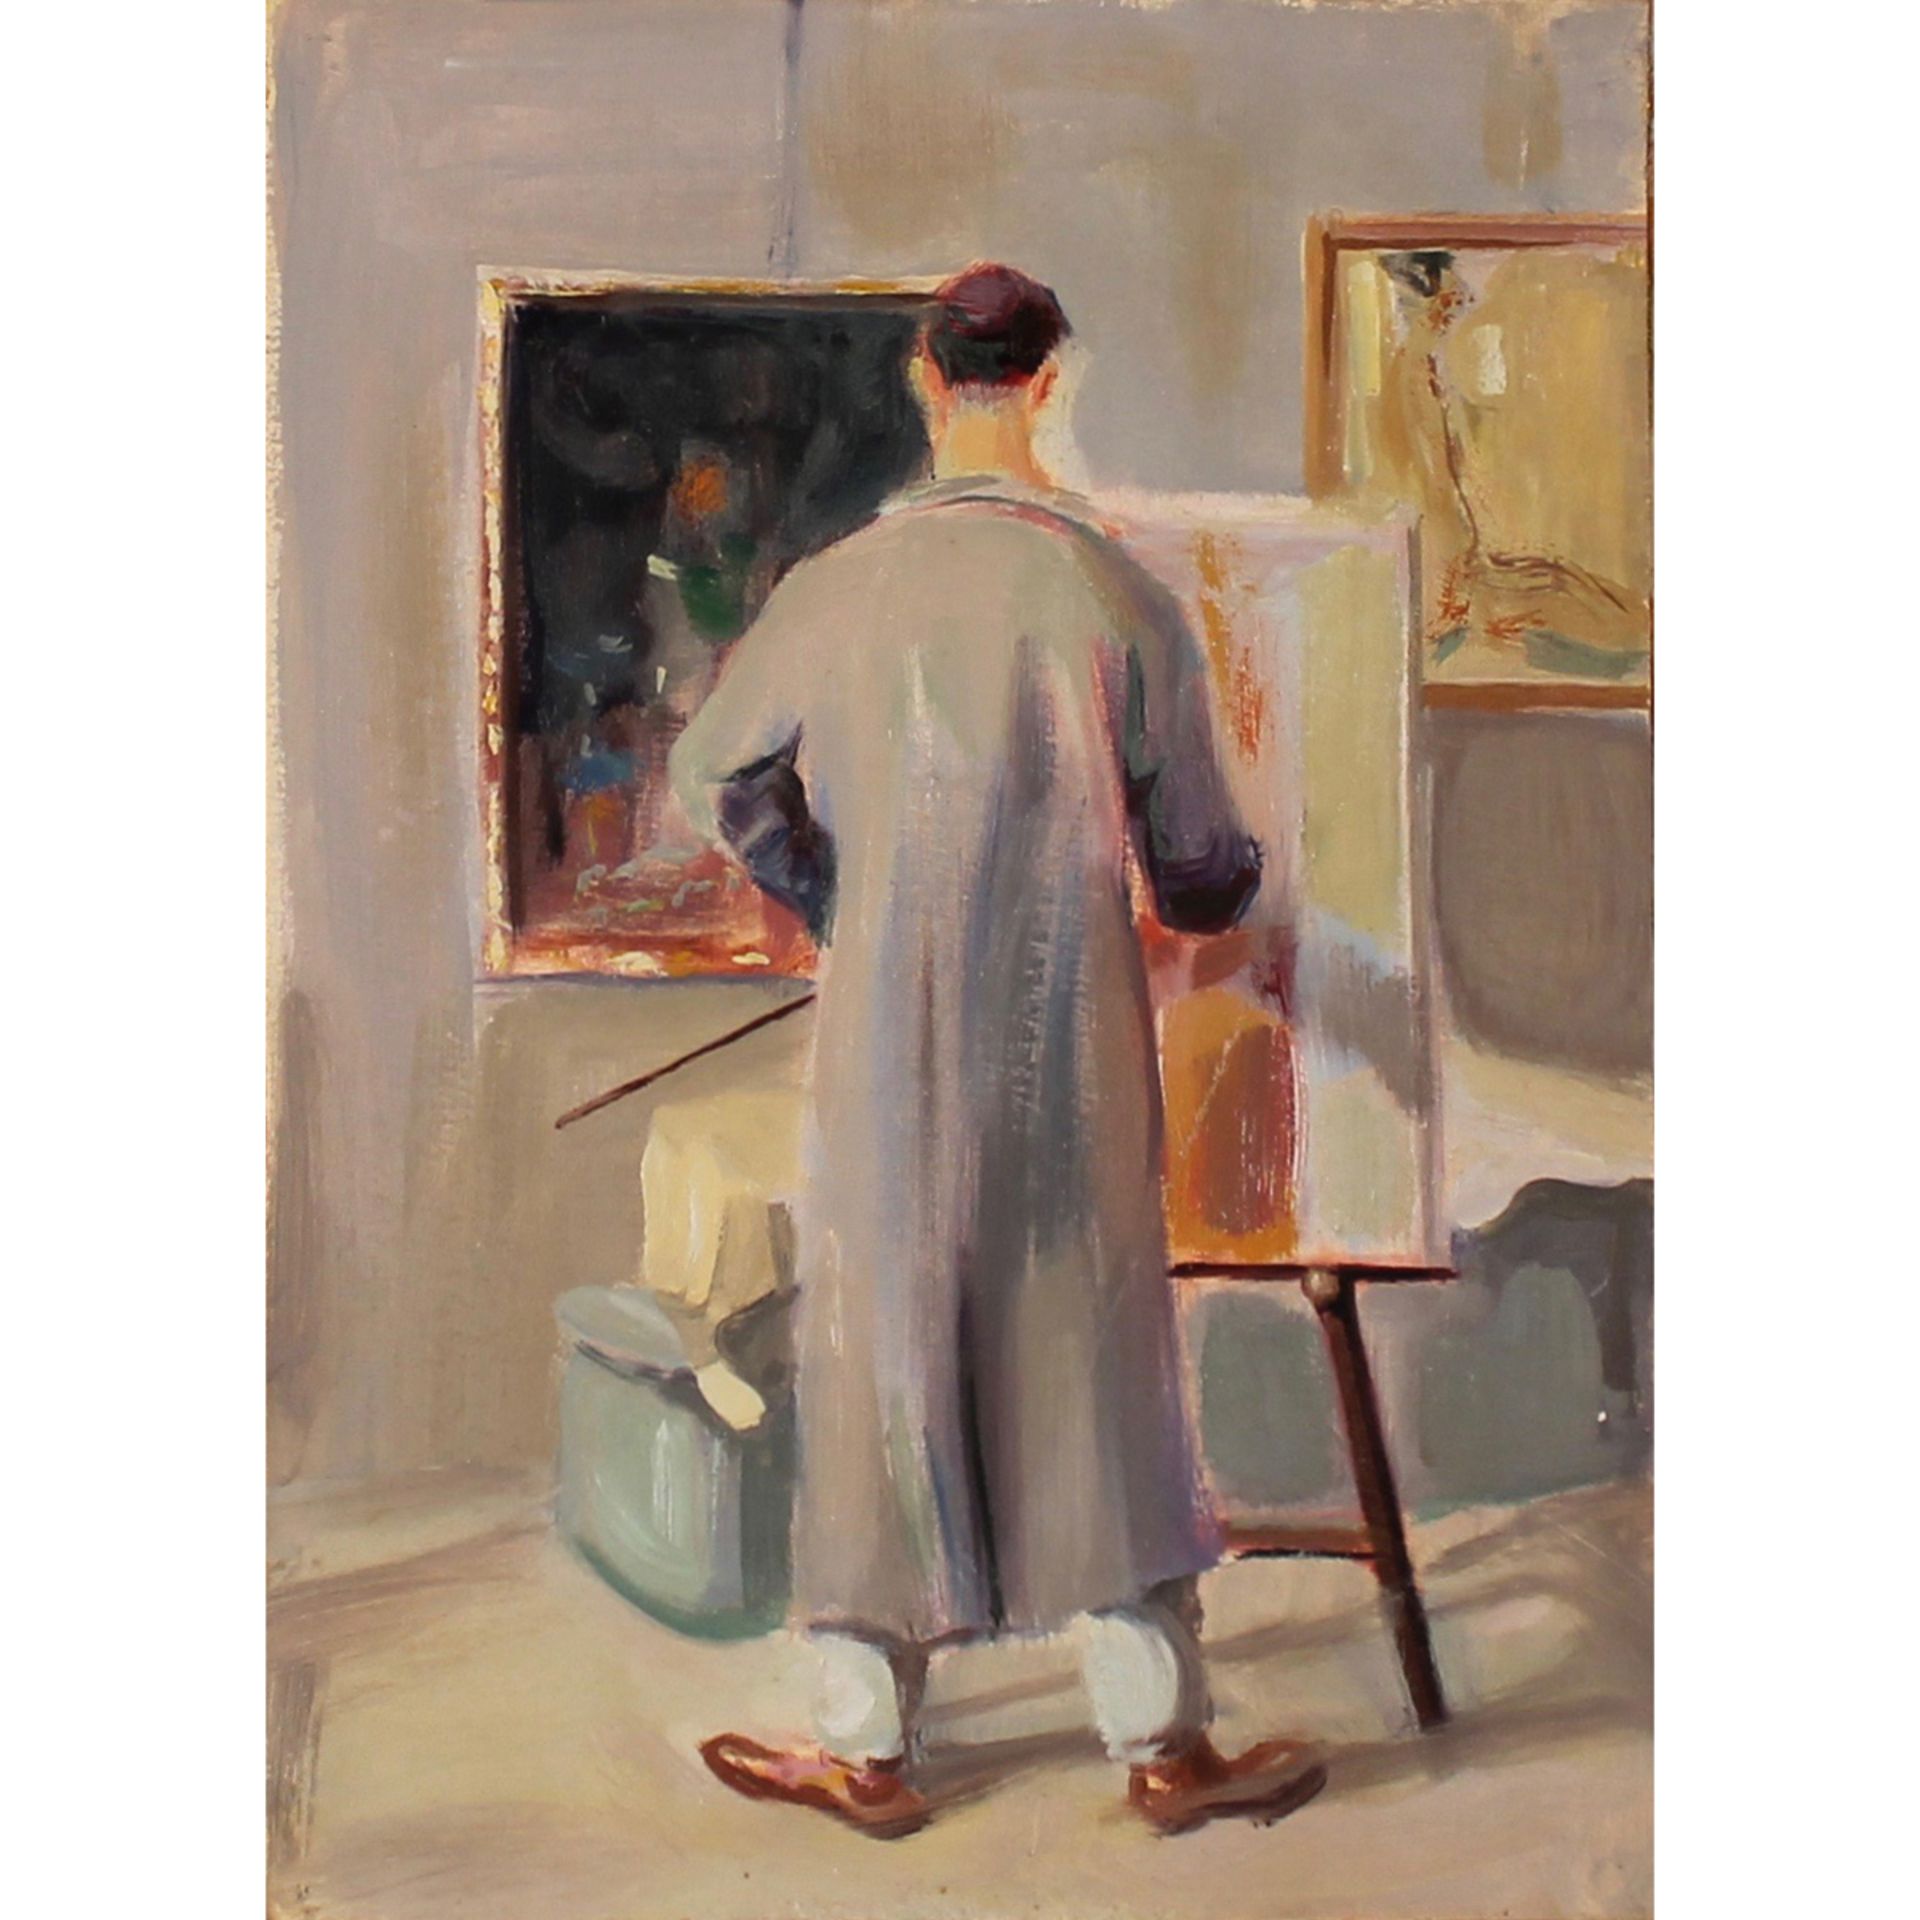 ALBERTO BEVILACQUA (attr.) (1896-1976) "Lo studio del pittore" - "The painter's studio"